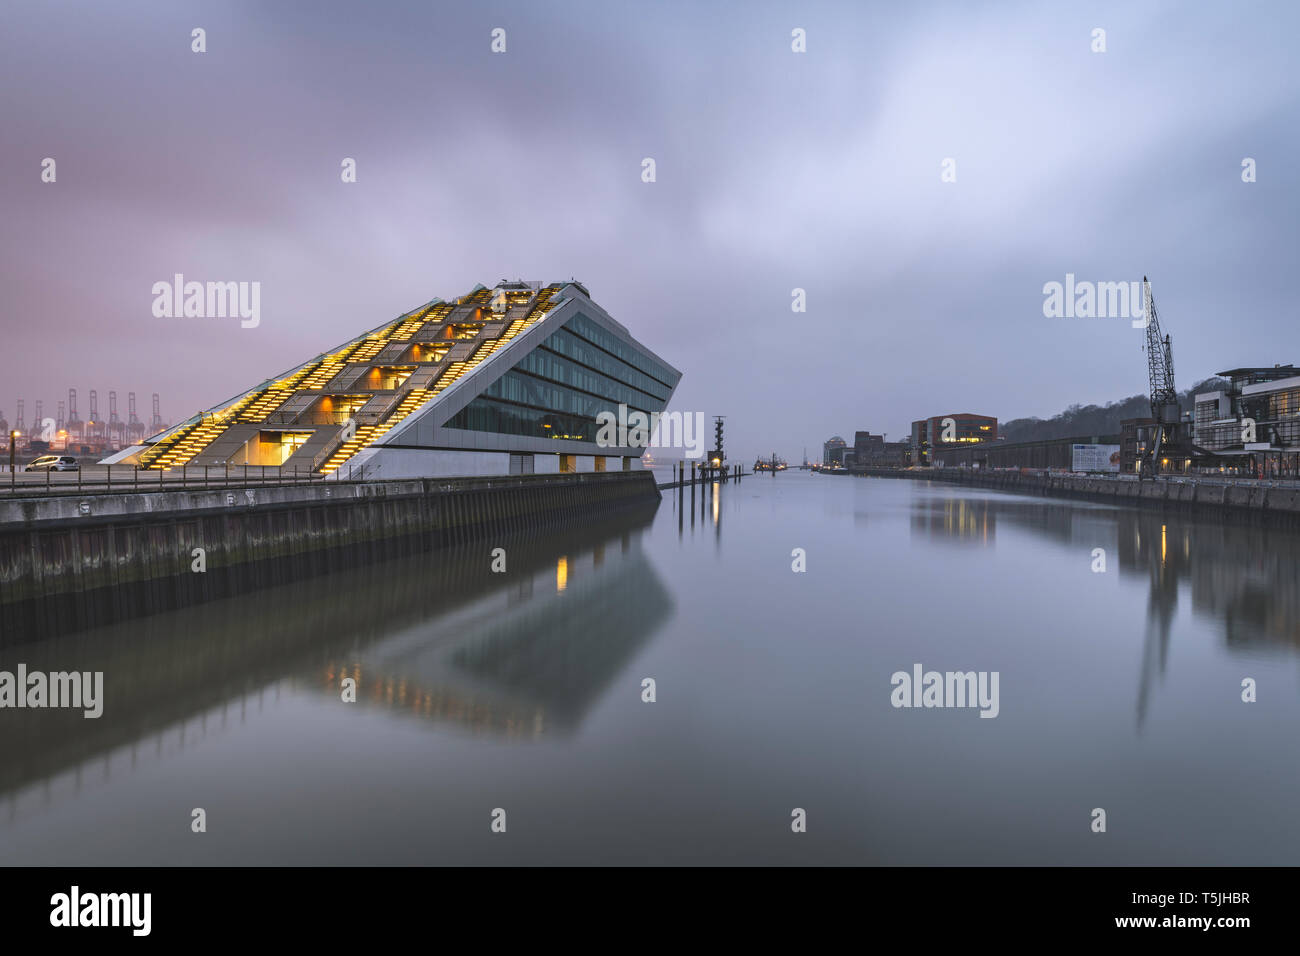 Allemagne, Hambourg, Altona, immeuble de bureaux modernes Dockland au crépuscule Banque D'Images